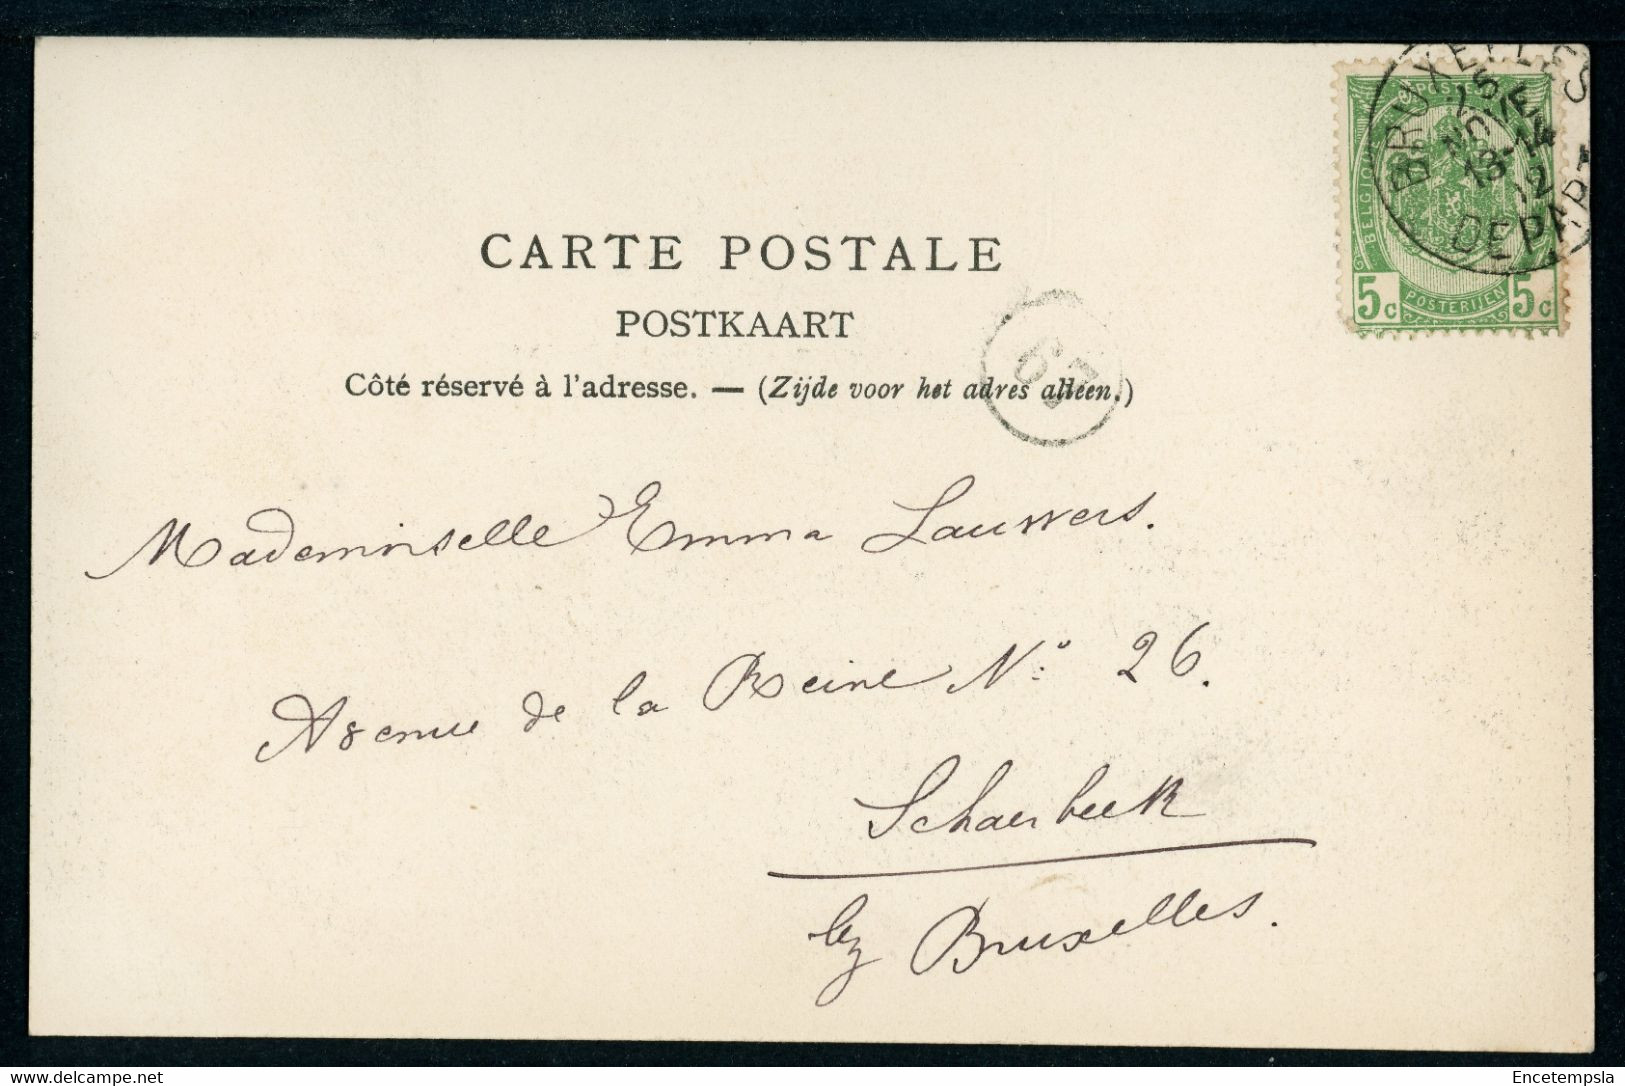 CPA - Carte Postale - Belgique - Bruxelles - Le Jardin Botanique - 1902 (CP20605) - Forêts, Parcs, Jardins